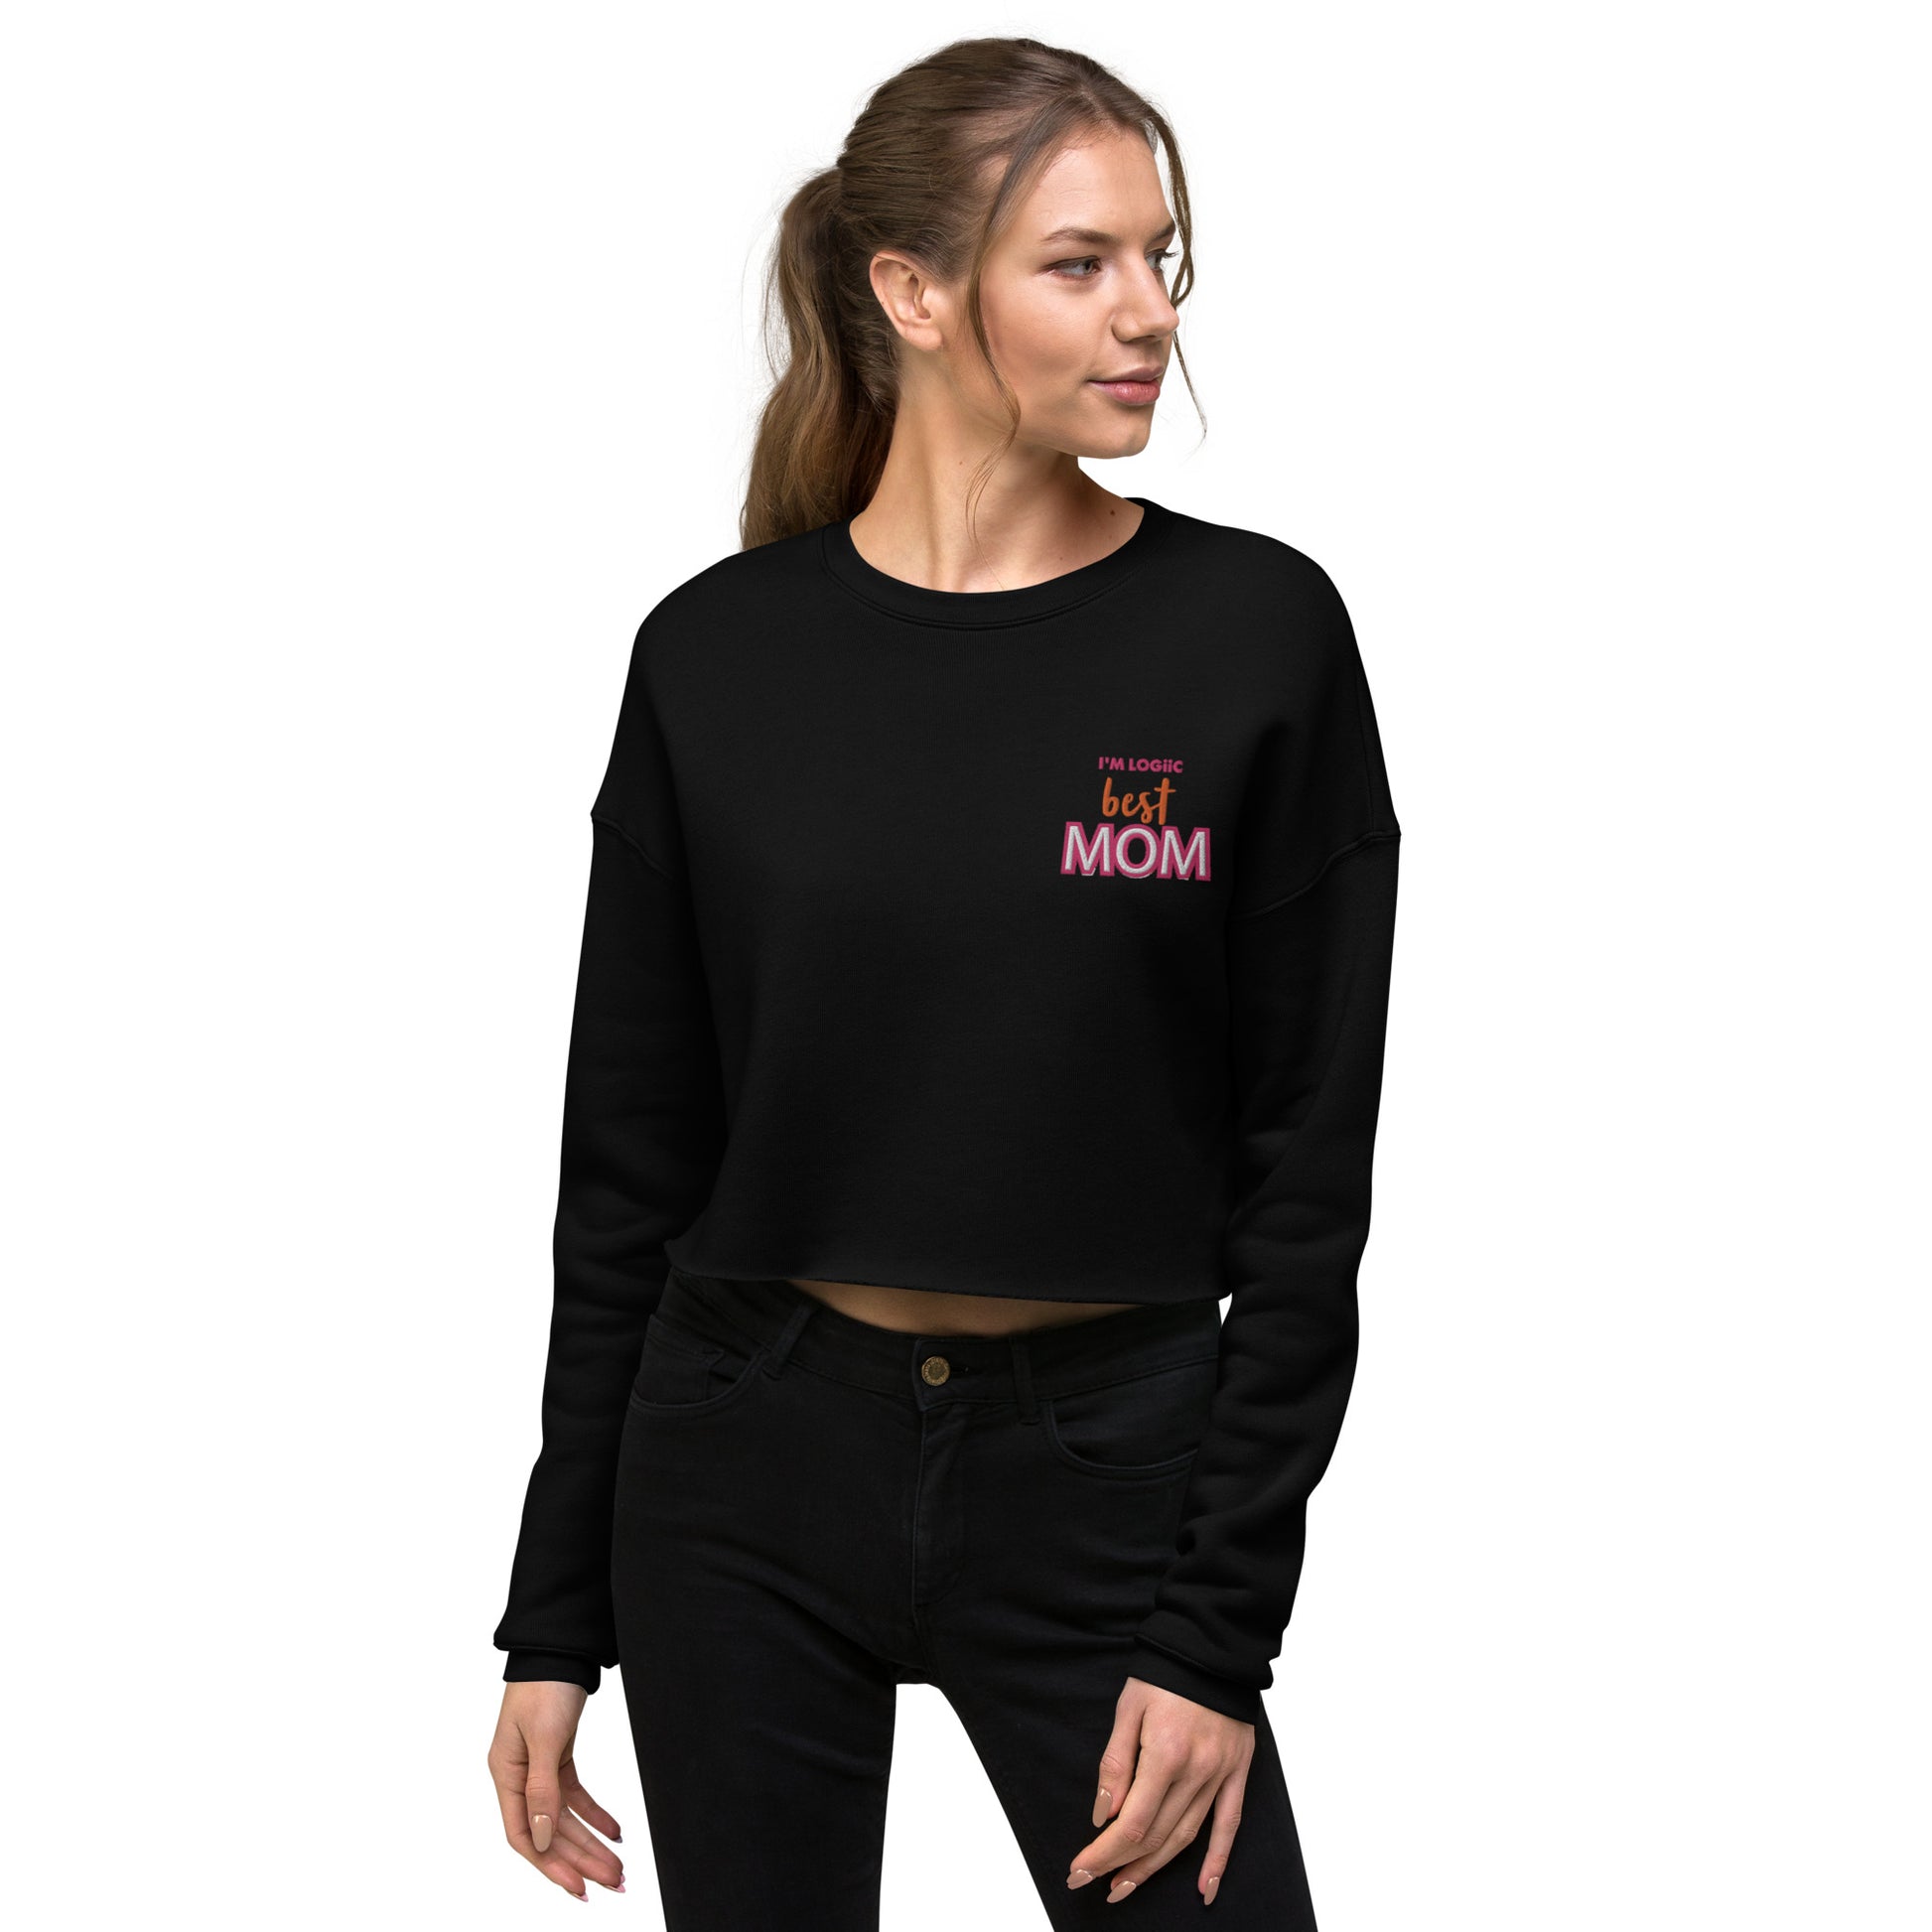 Best MOM Crop Sweatshirt - Black / S